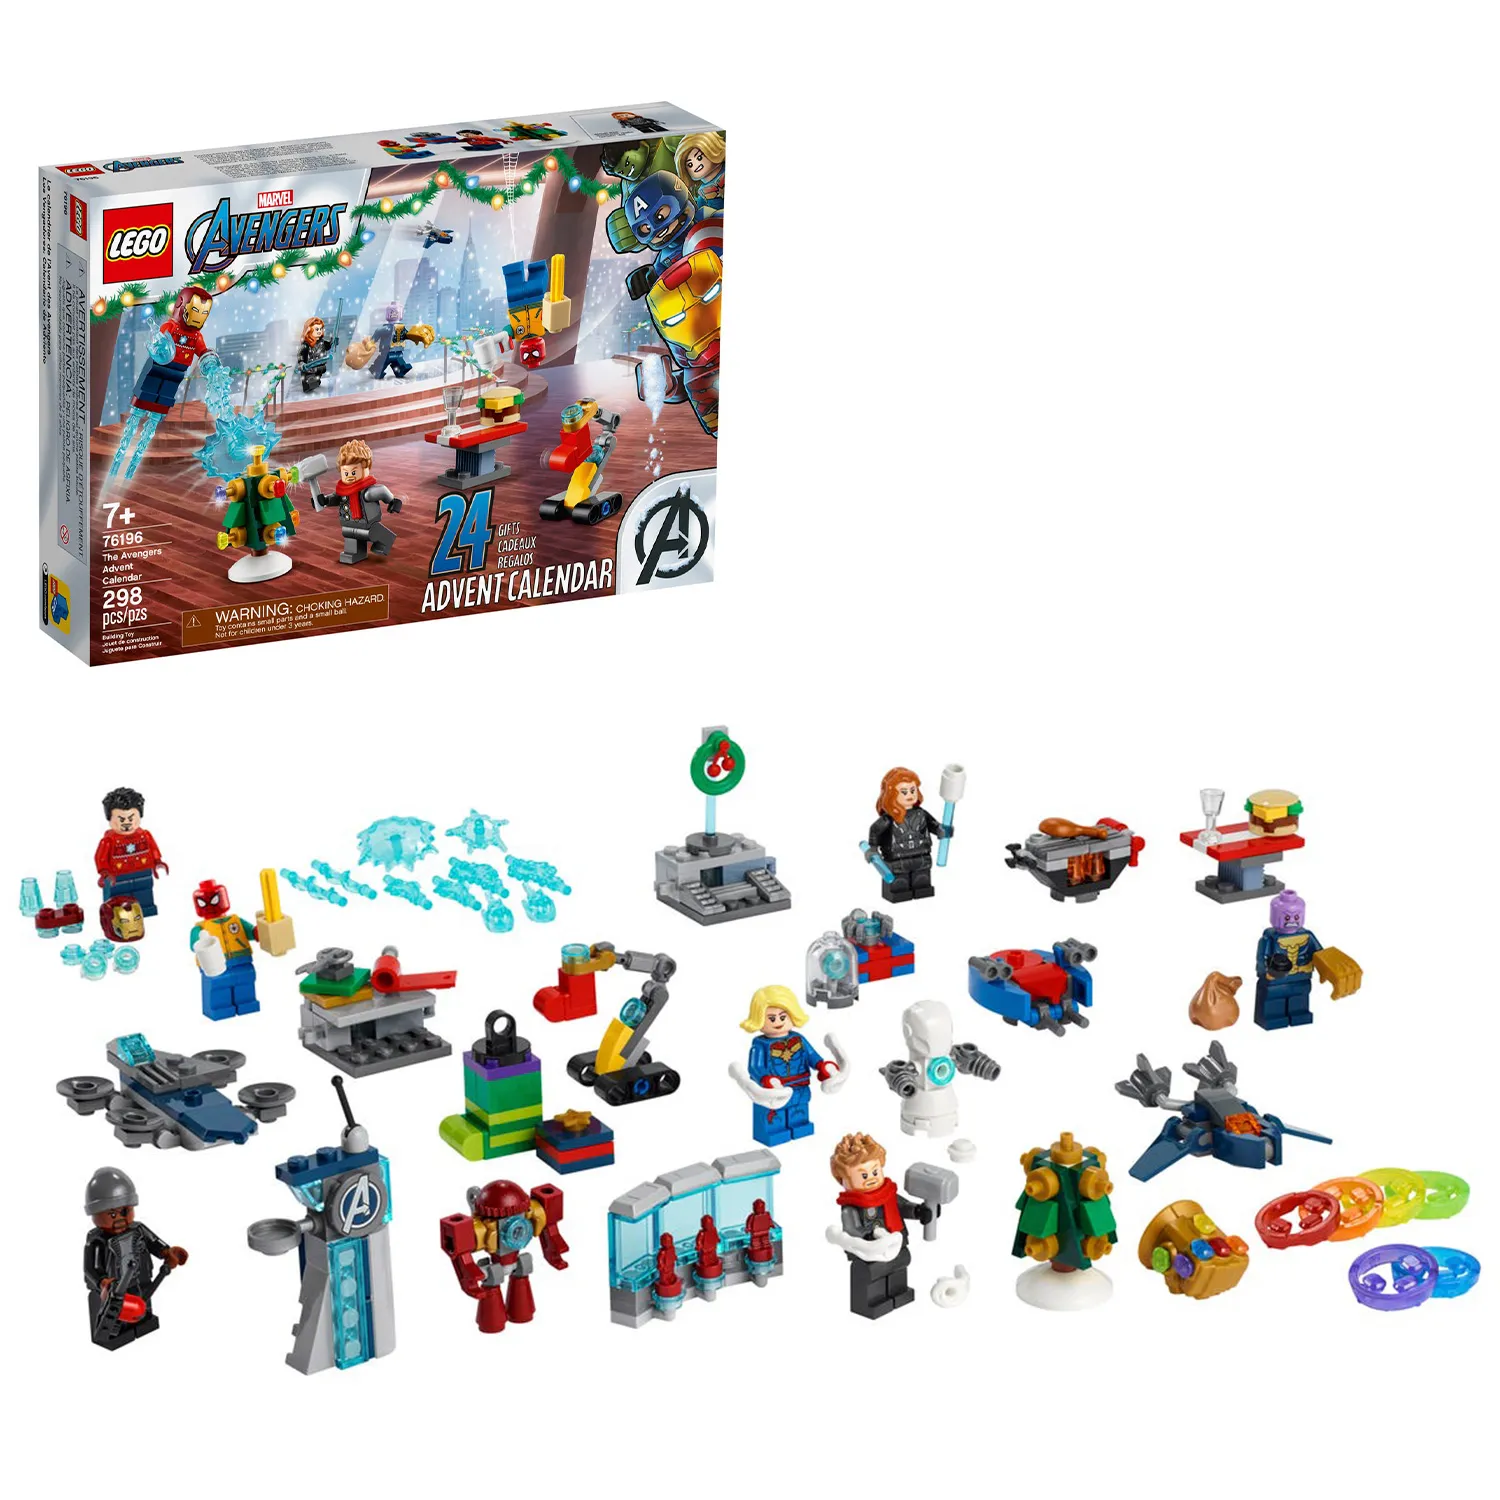 Купить в Минске Lego (Лего) Конструктор Мстители «Новогодний календарь»  76196